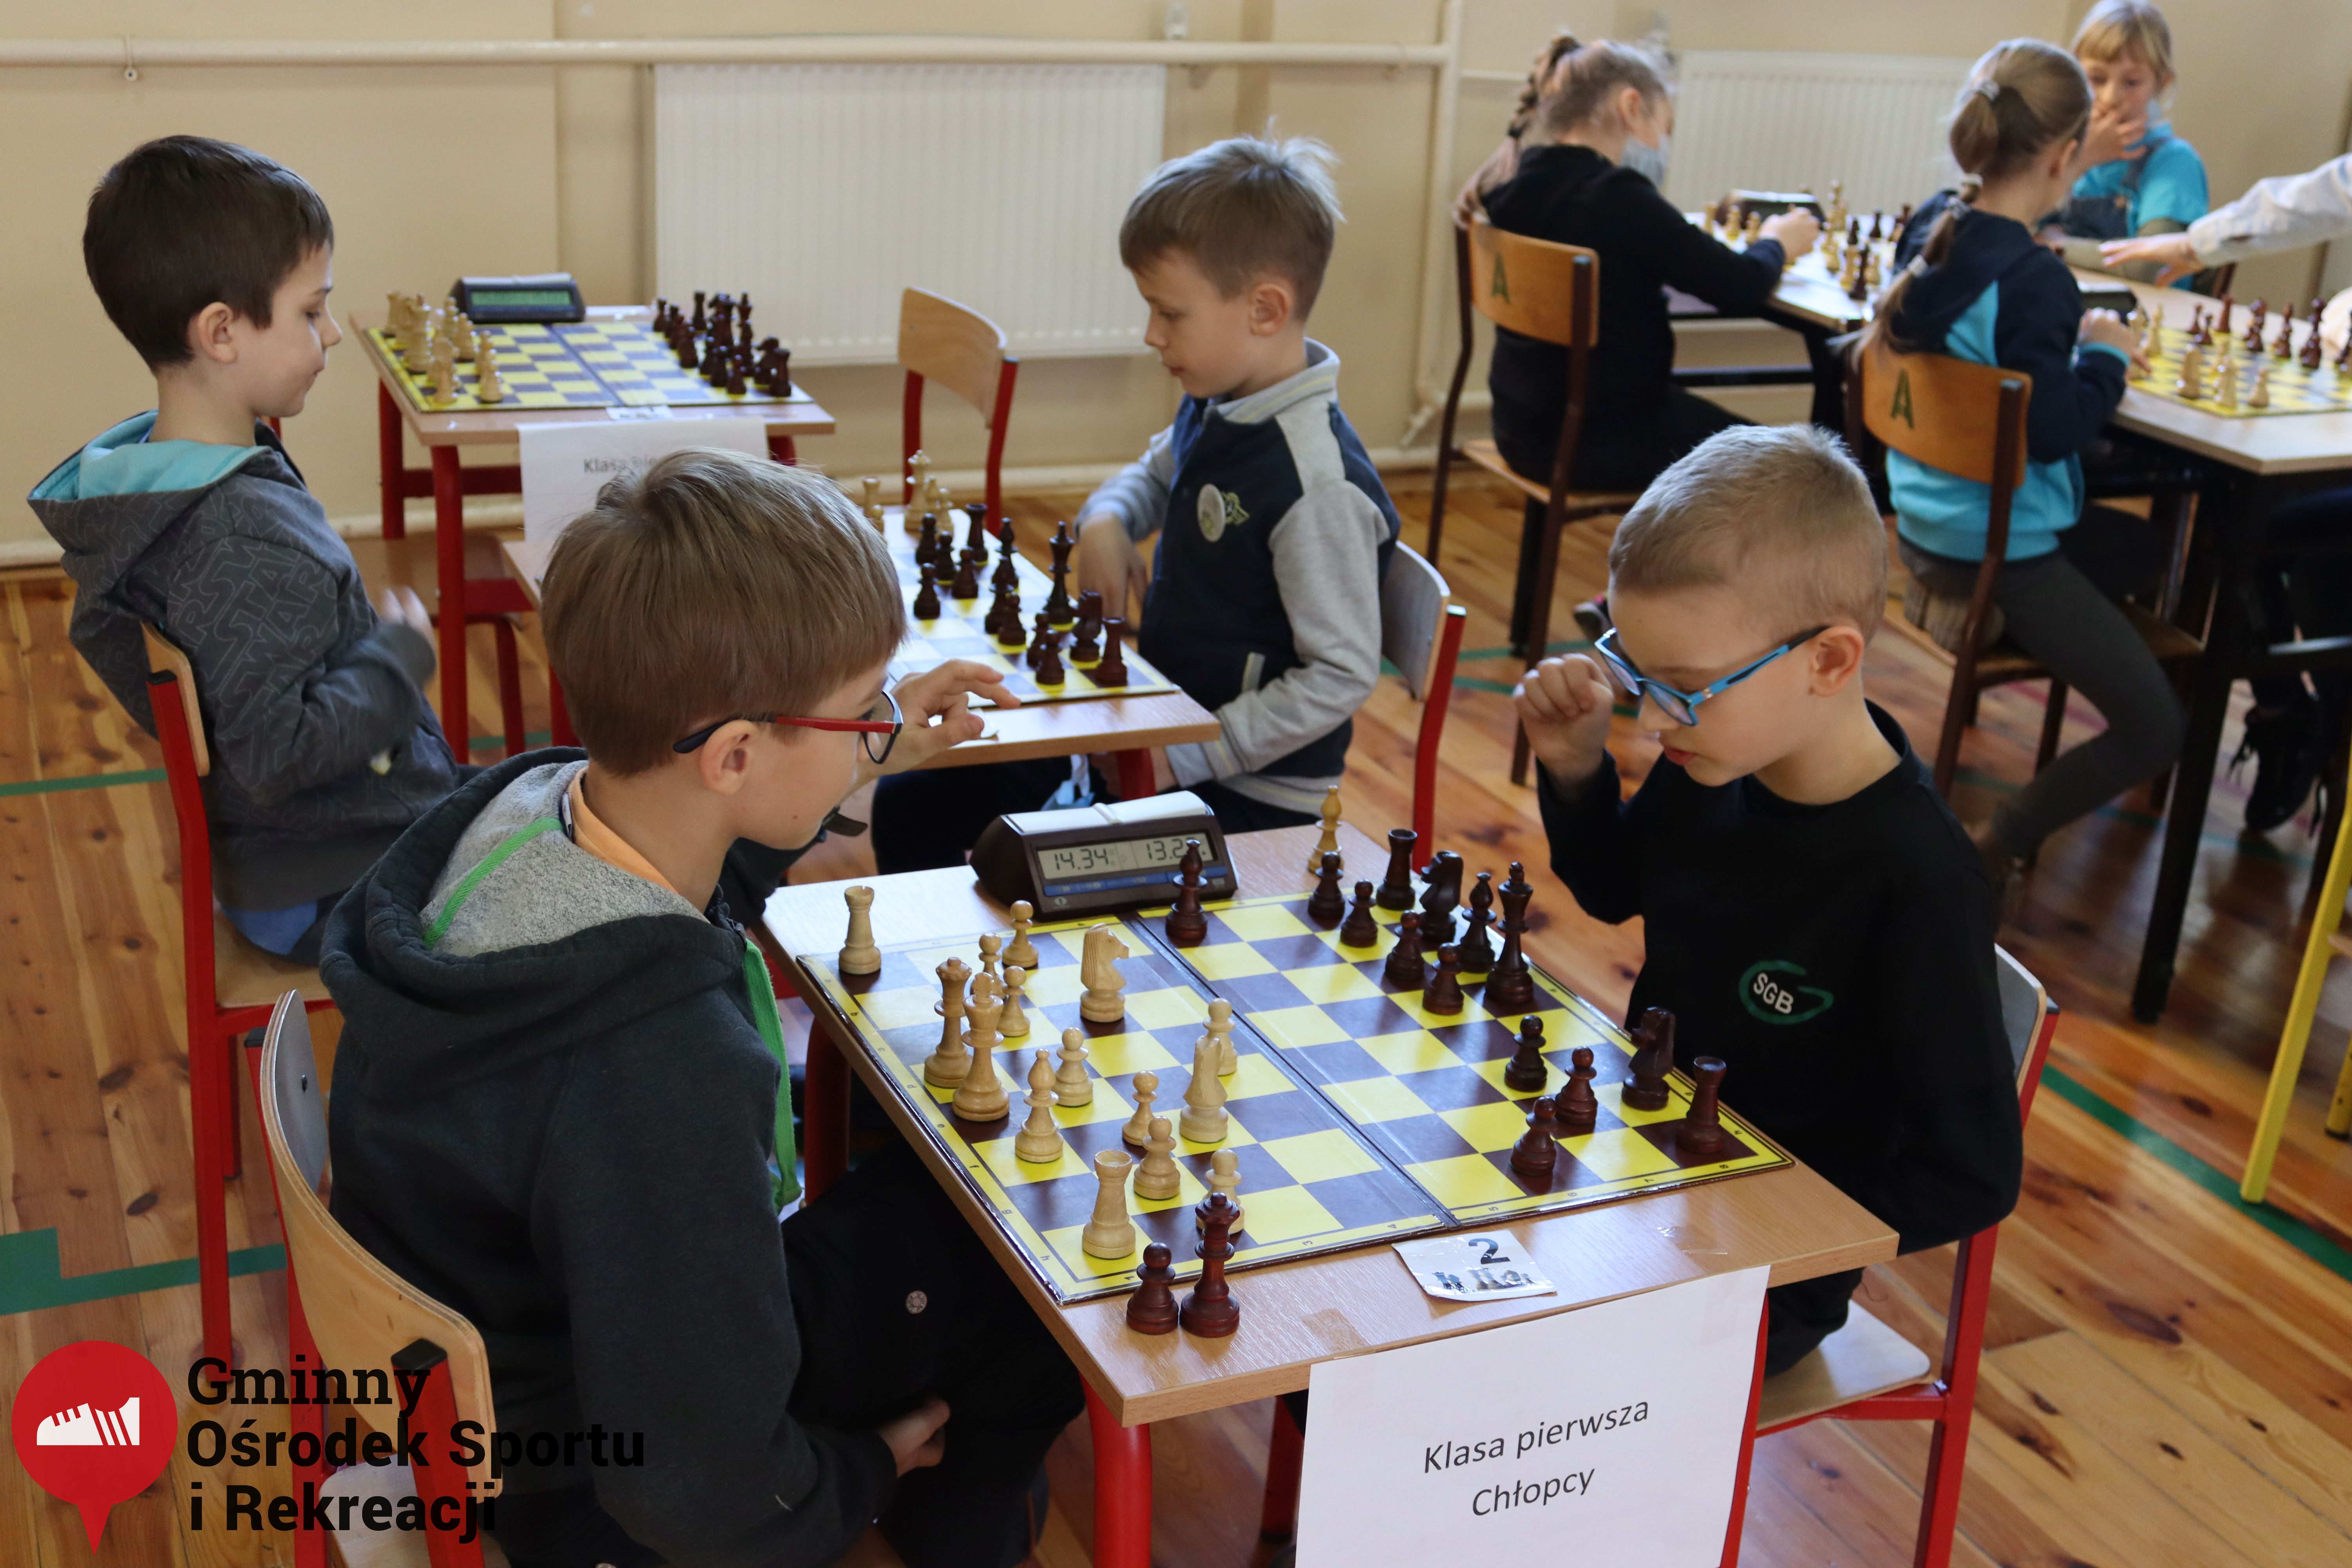 2022.03.12-13 Turniej szachowy - Edukacja przez Szachy031.jpg - 1,98 MB